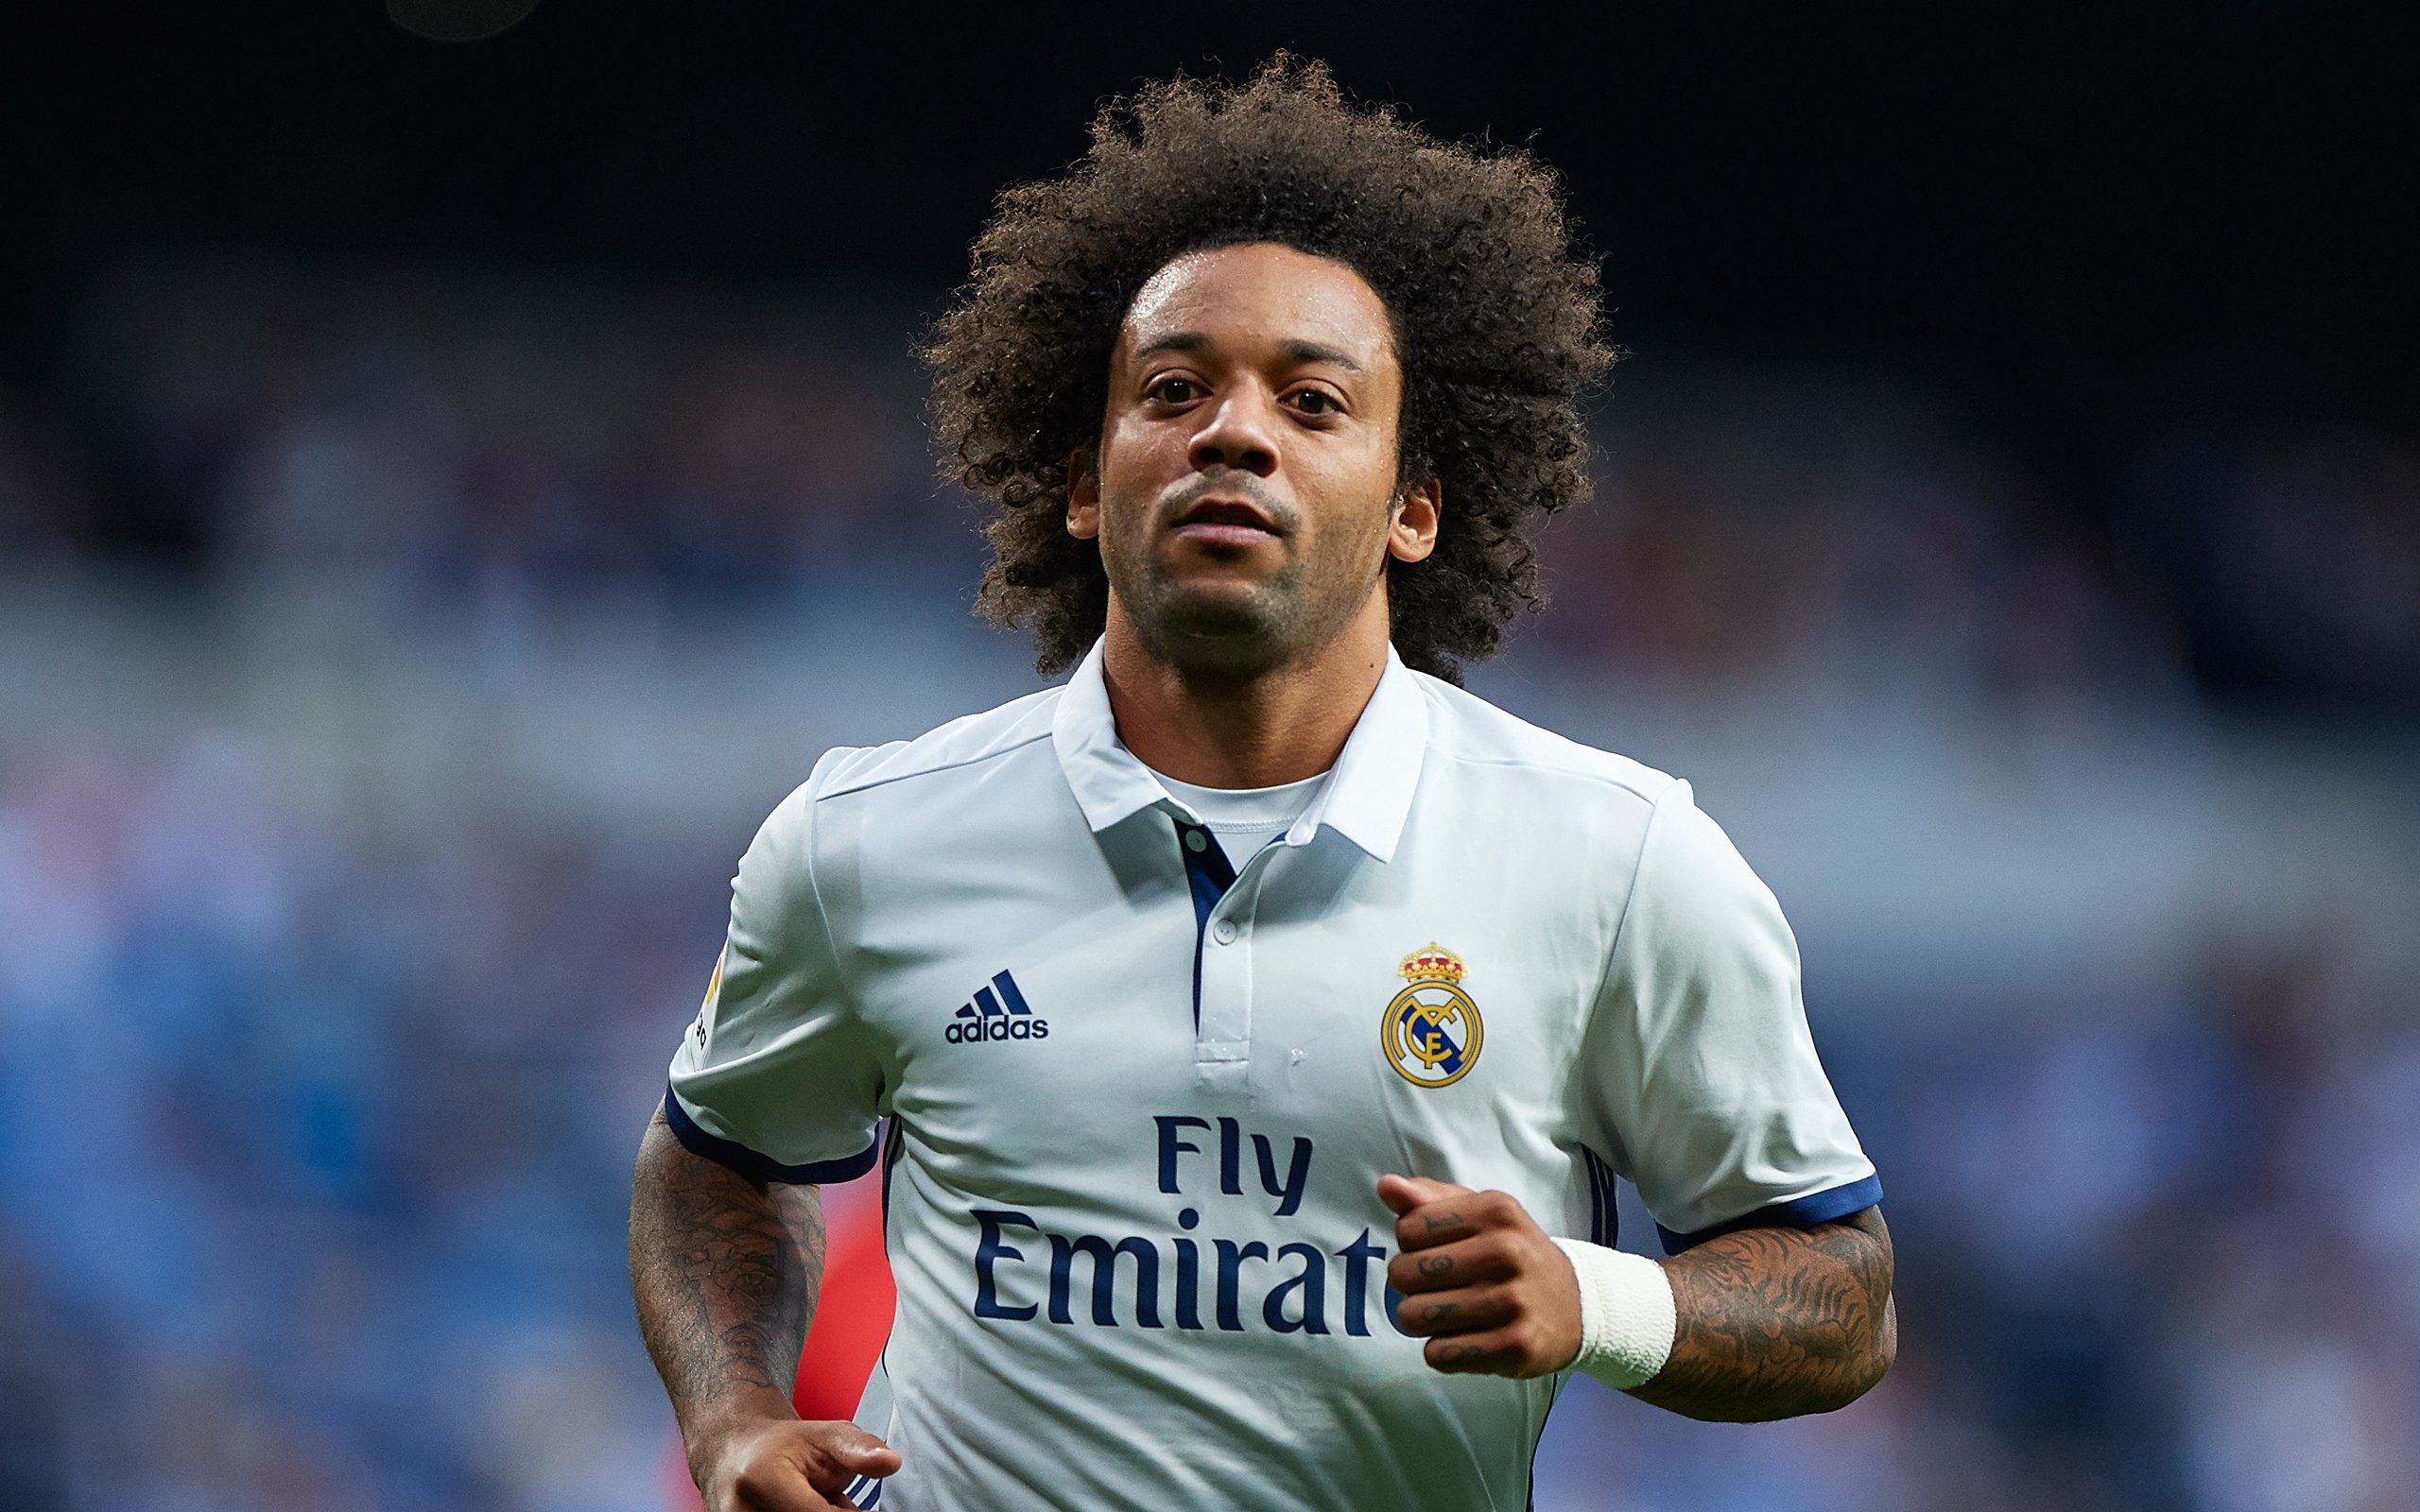 Câu lạc bộ Real Madrid: Marcelo Vieira có lẽ nên nghỉ hưu